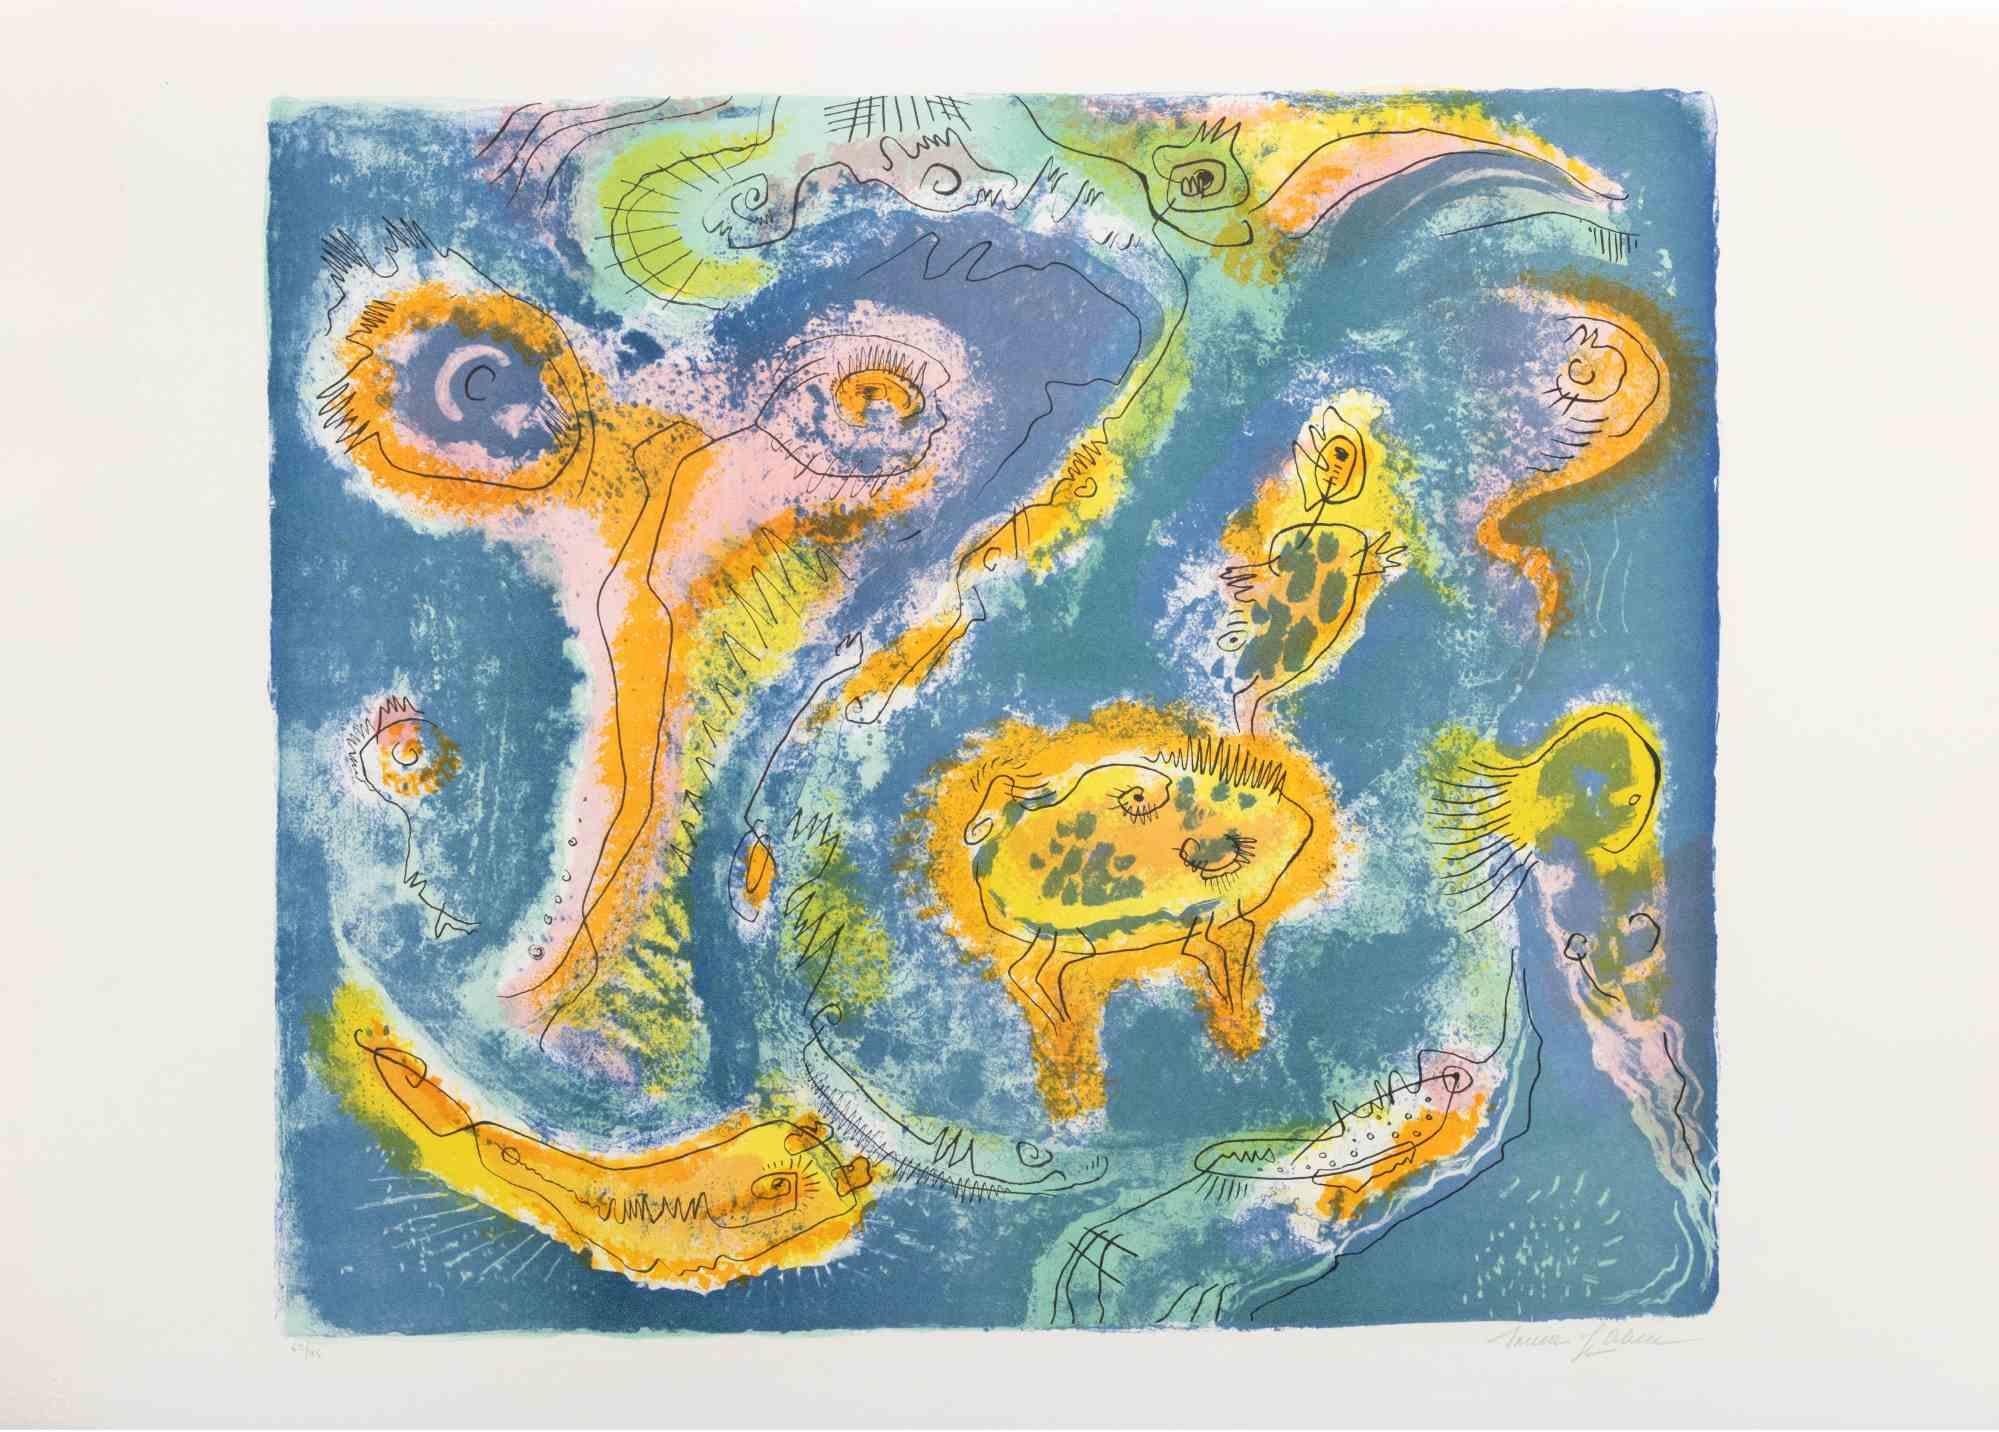 L'étang est une œuvre d'art contemporain réalisée par Le Pond dans les années 1970.

Lithographie en couleurs mélangées.

Signé à la main dans la marge inférieure.

Numéroté dans la marge inférieure.

Édition de 62/95.